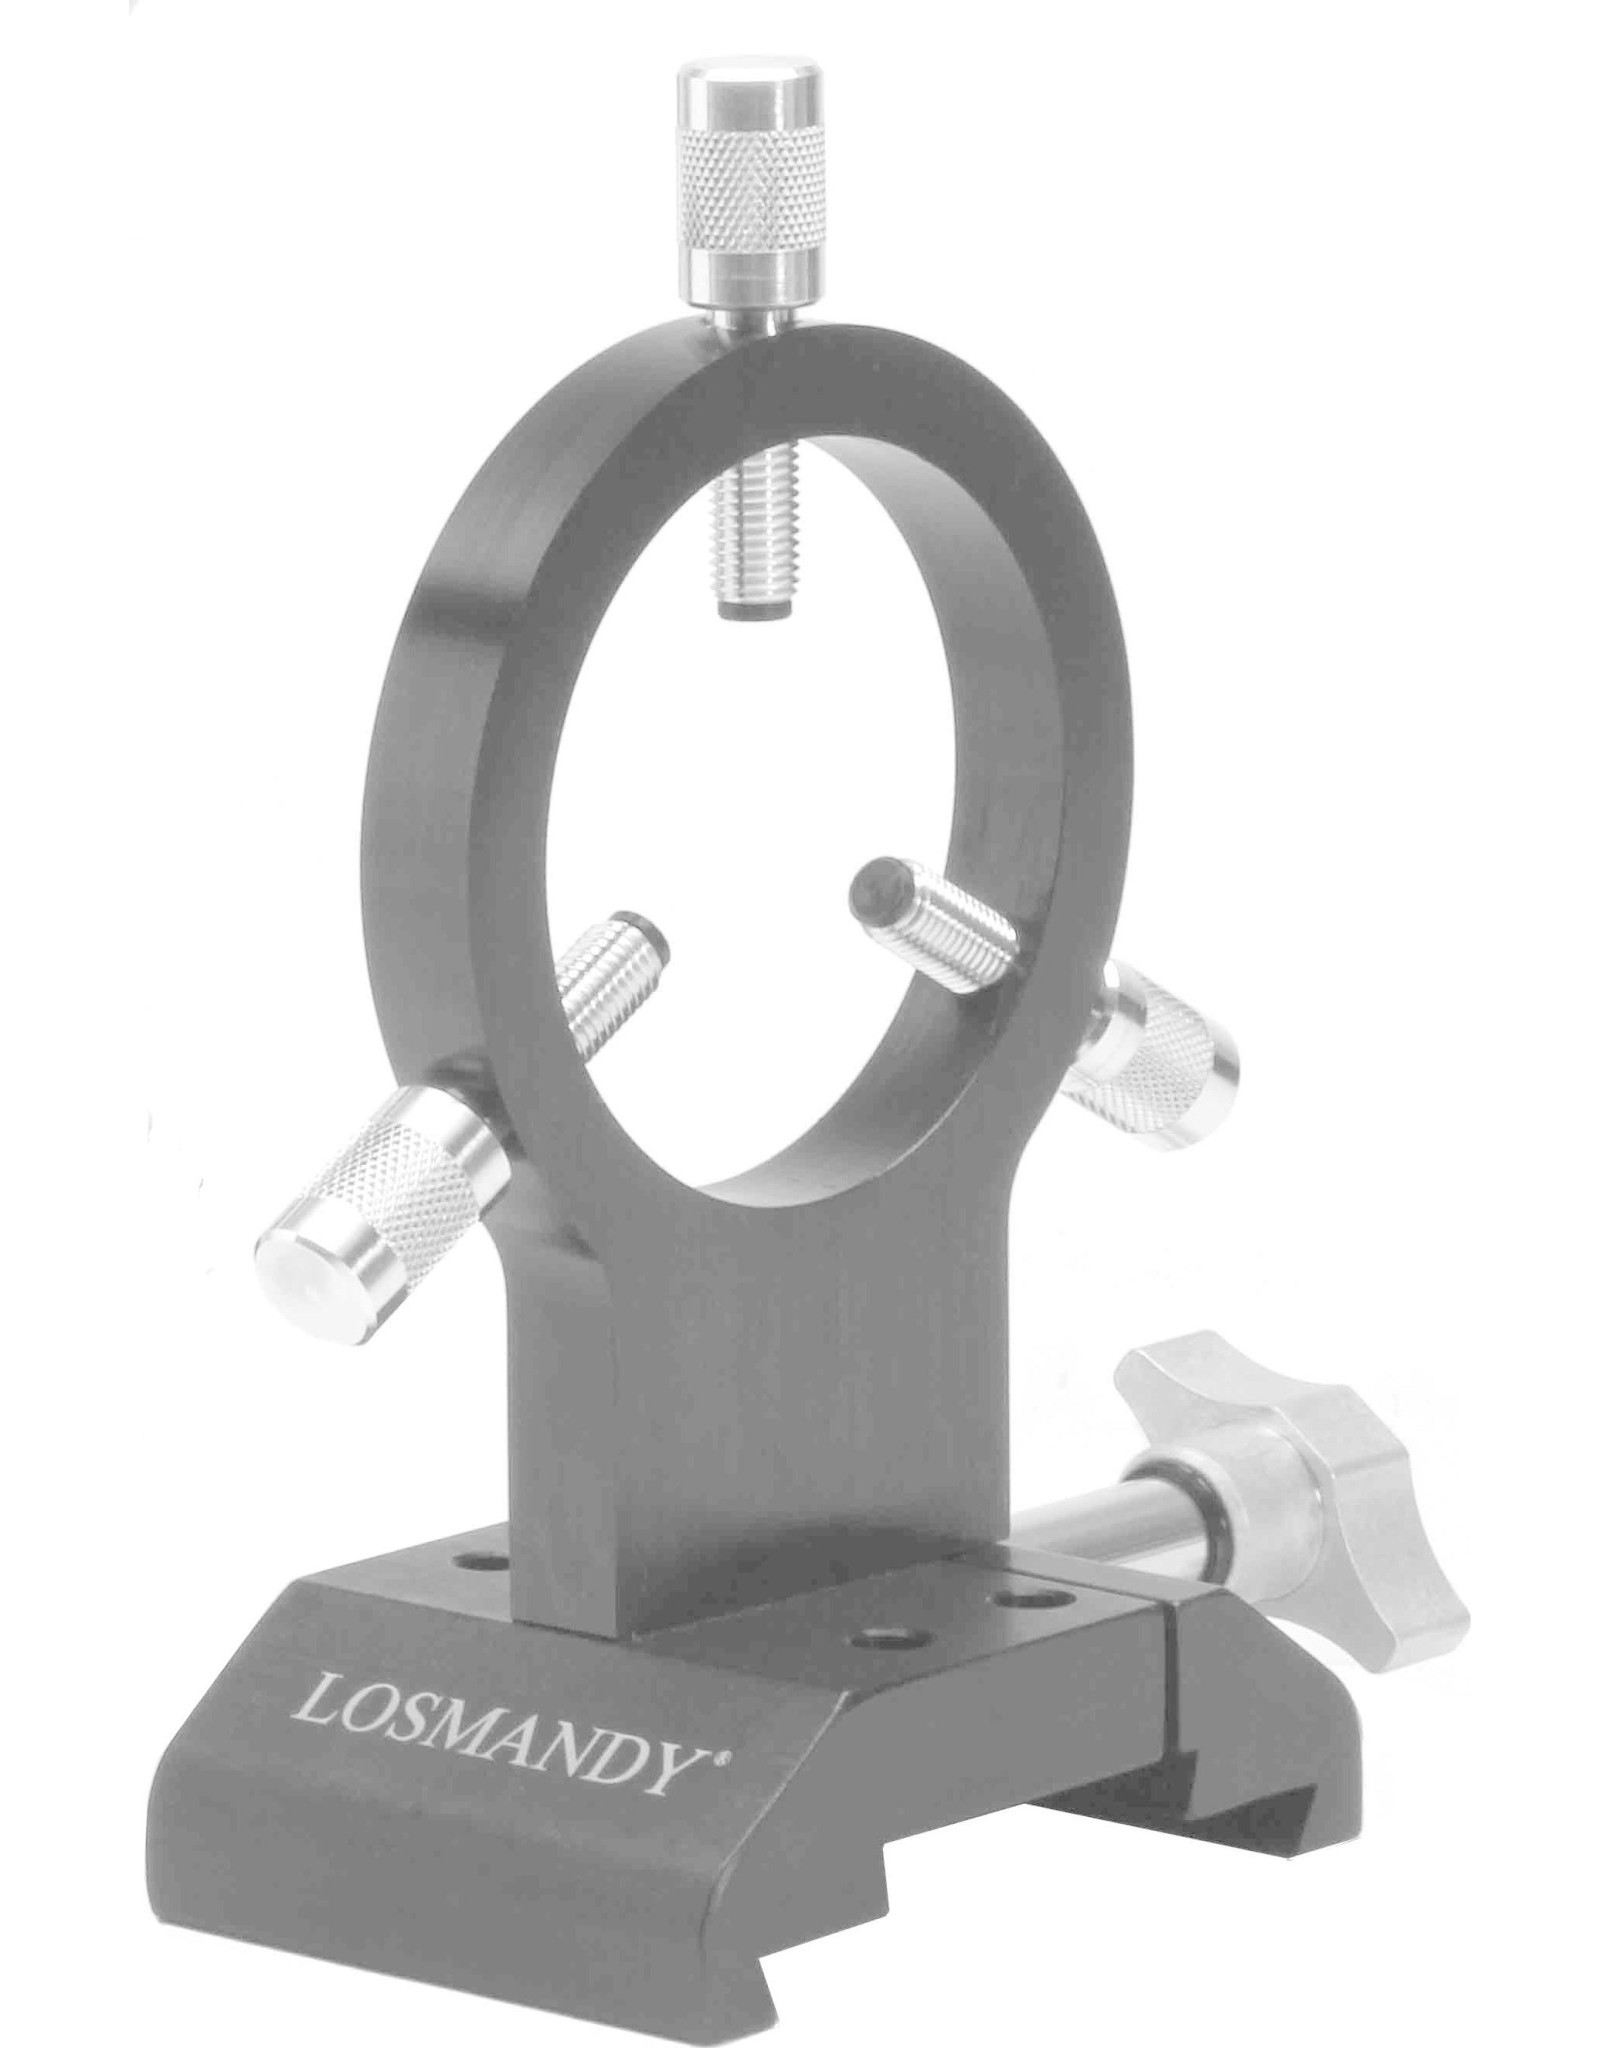 Losmandy Losmandy AutoGuider Camera Mounting Ring - DVR 66